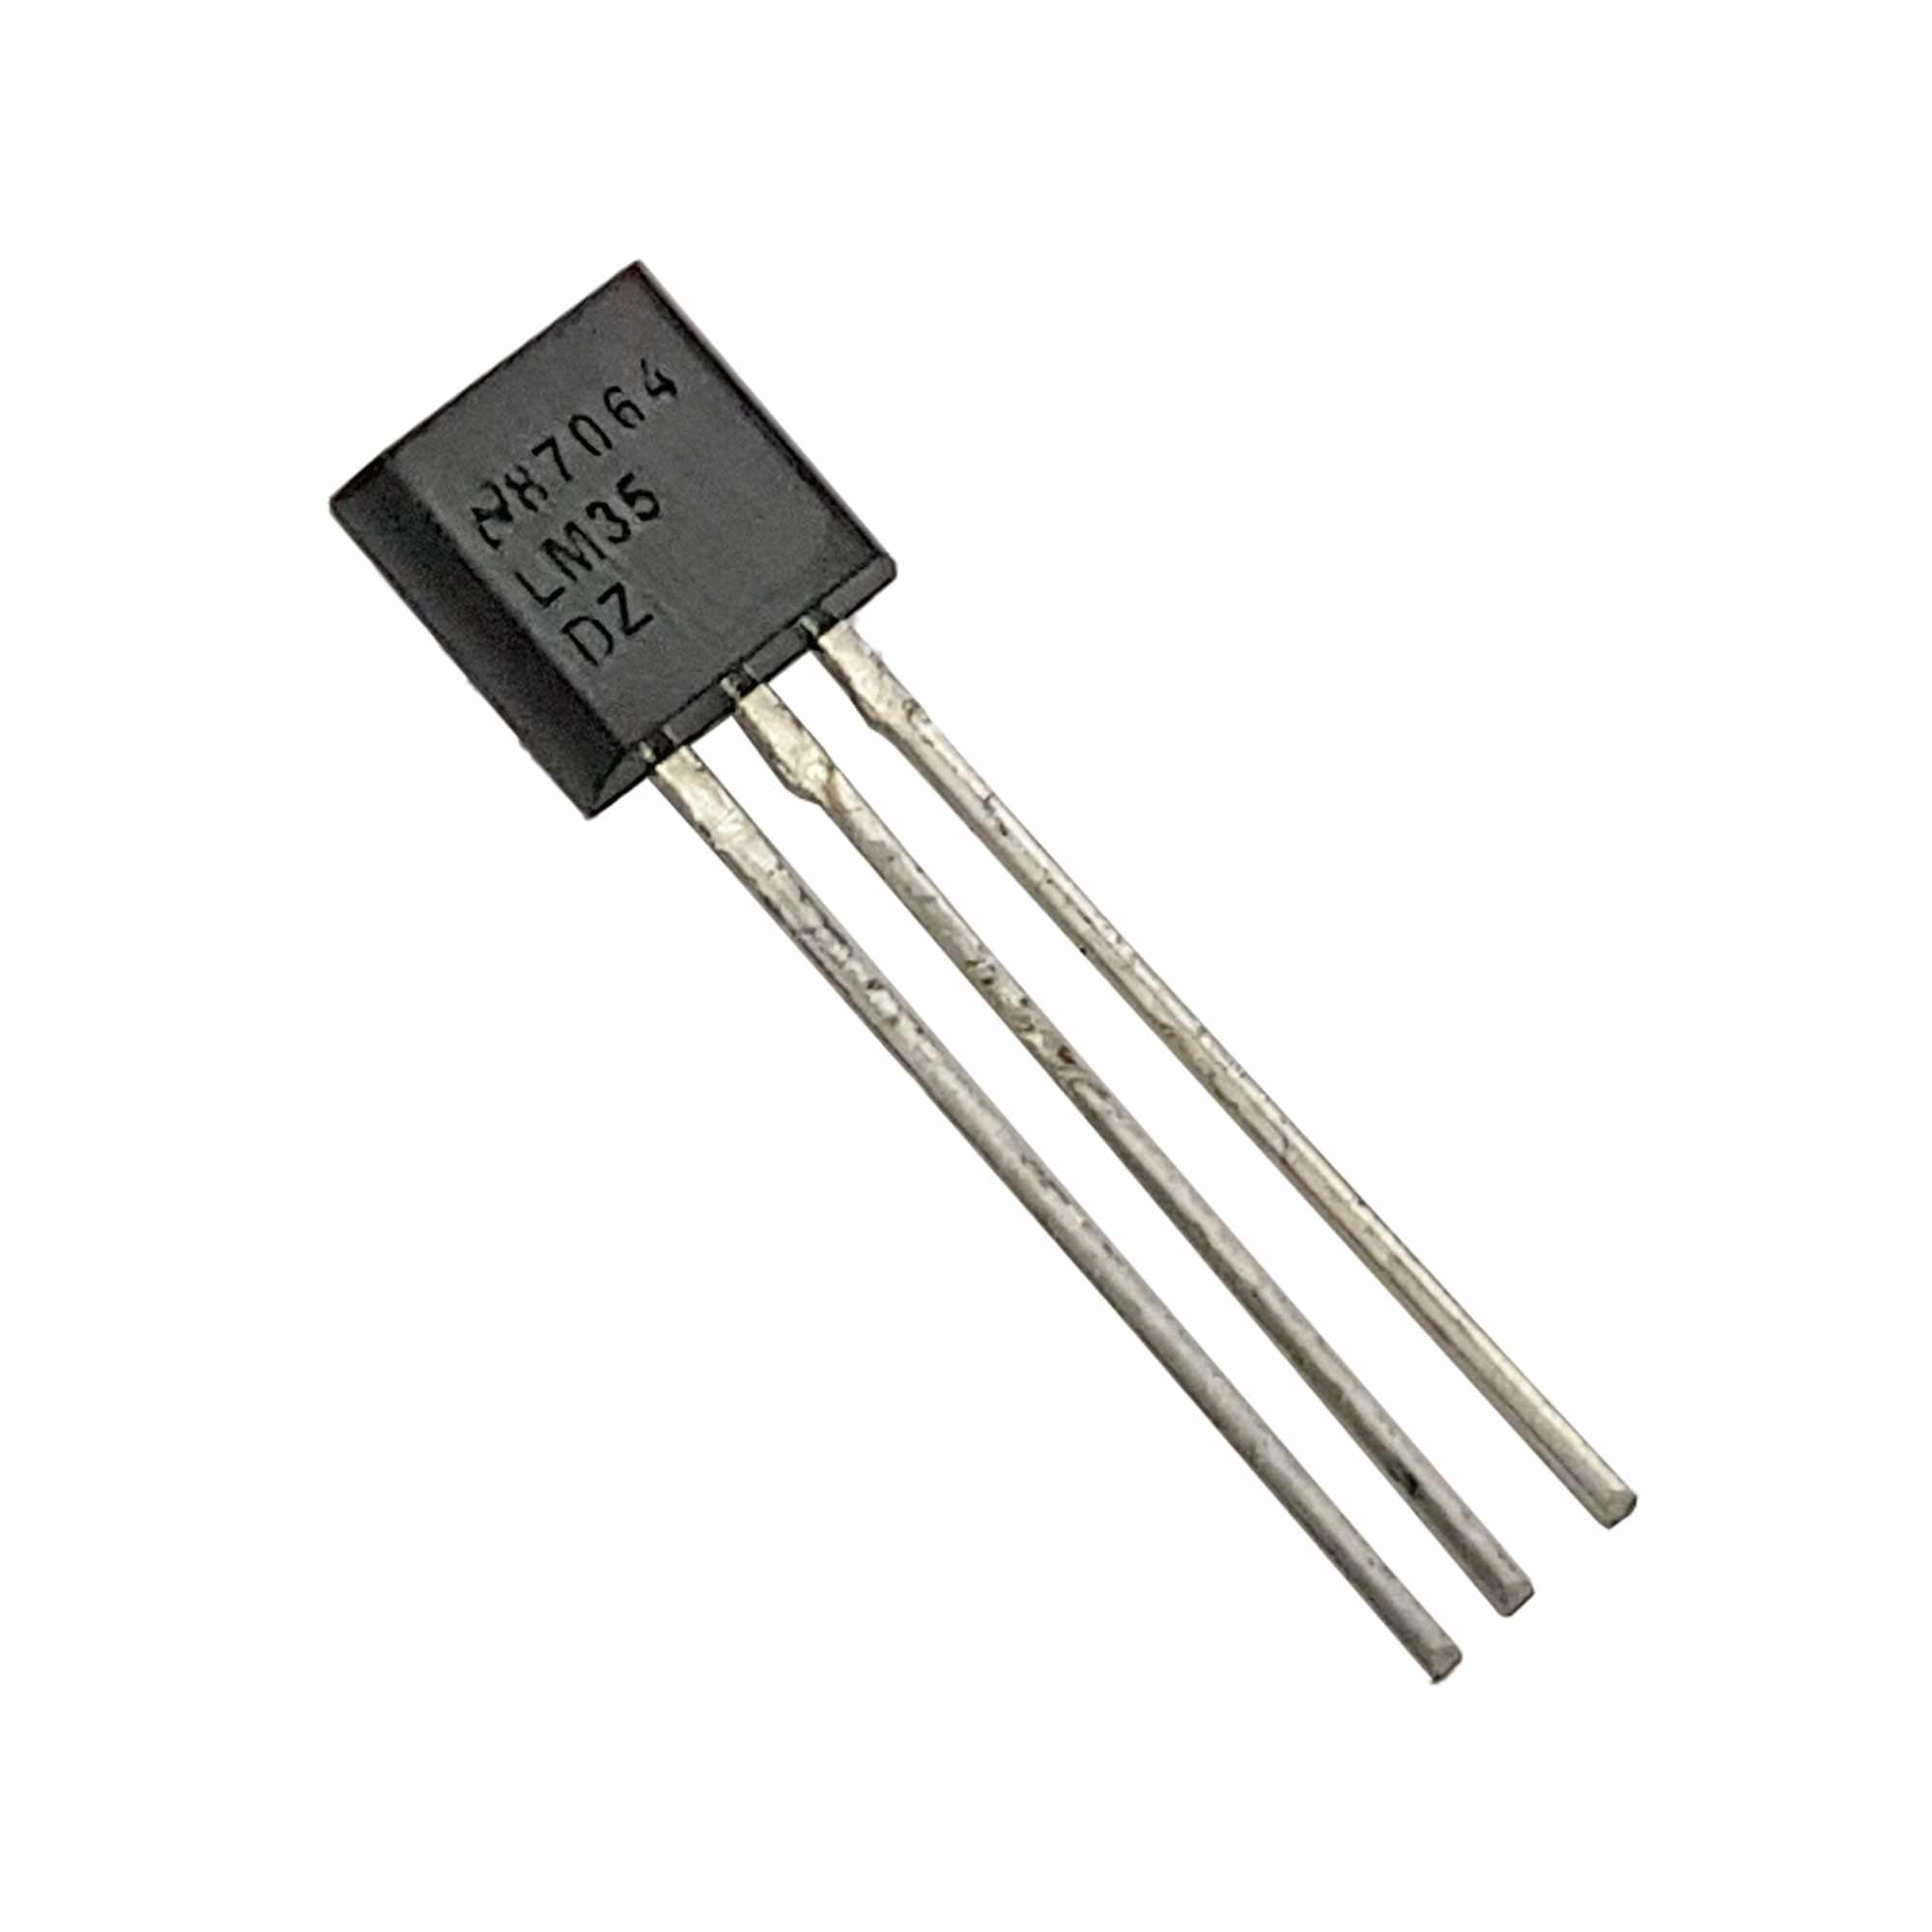 IC cảm biến nhiệt độ LM35 (loại tốt)